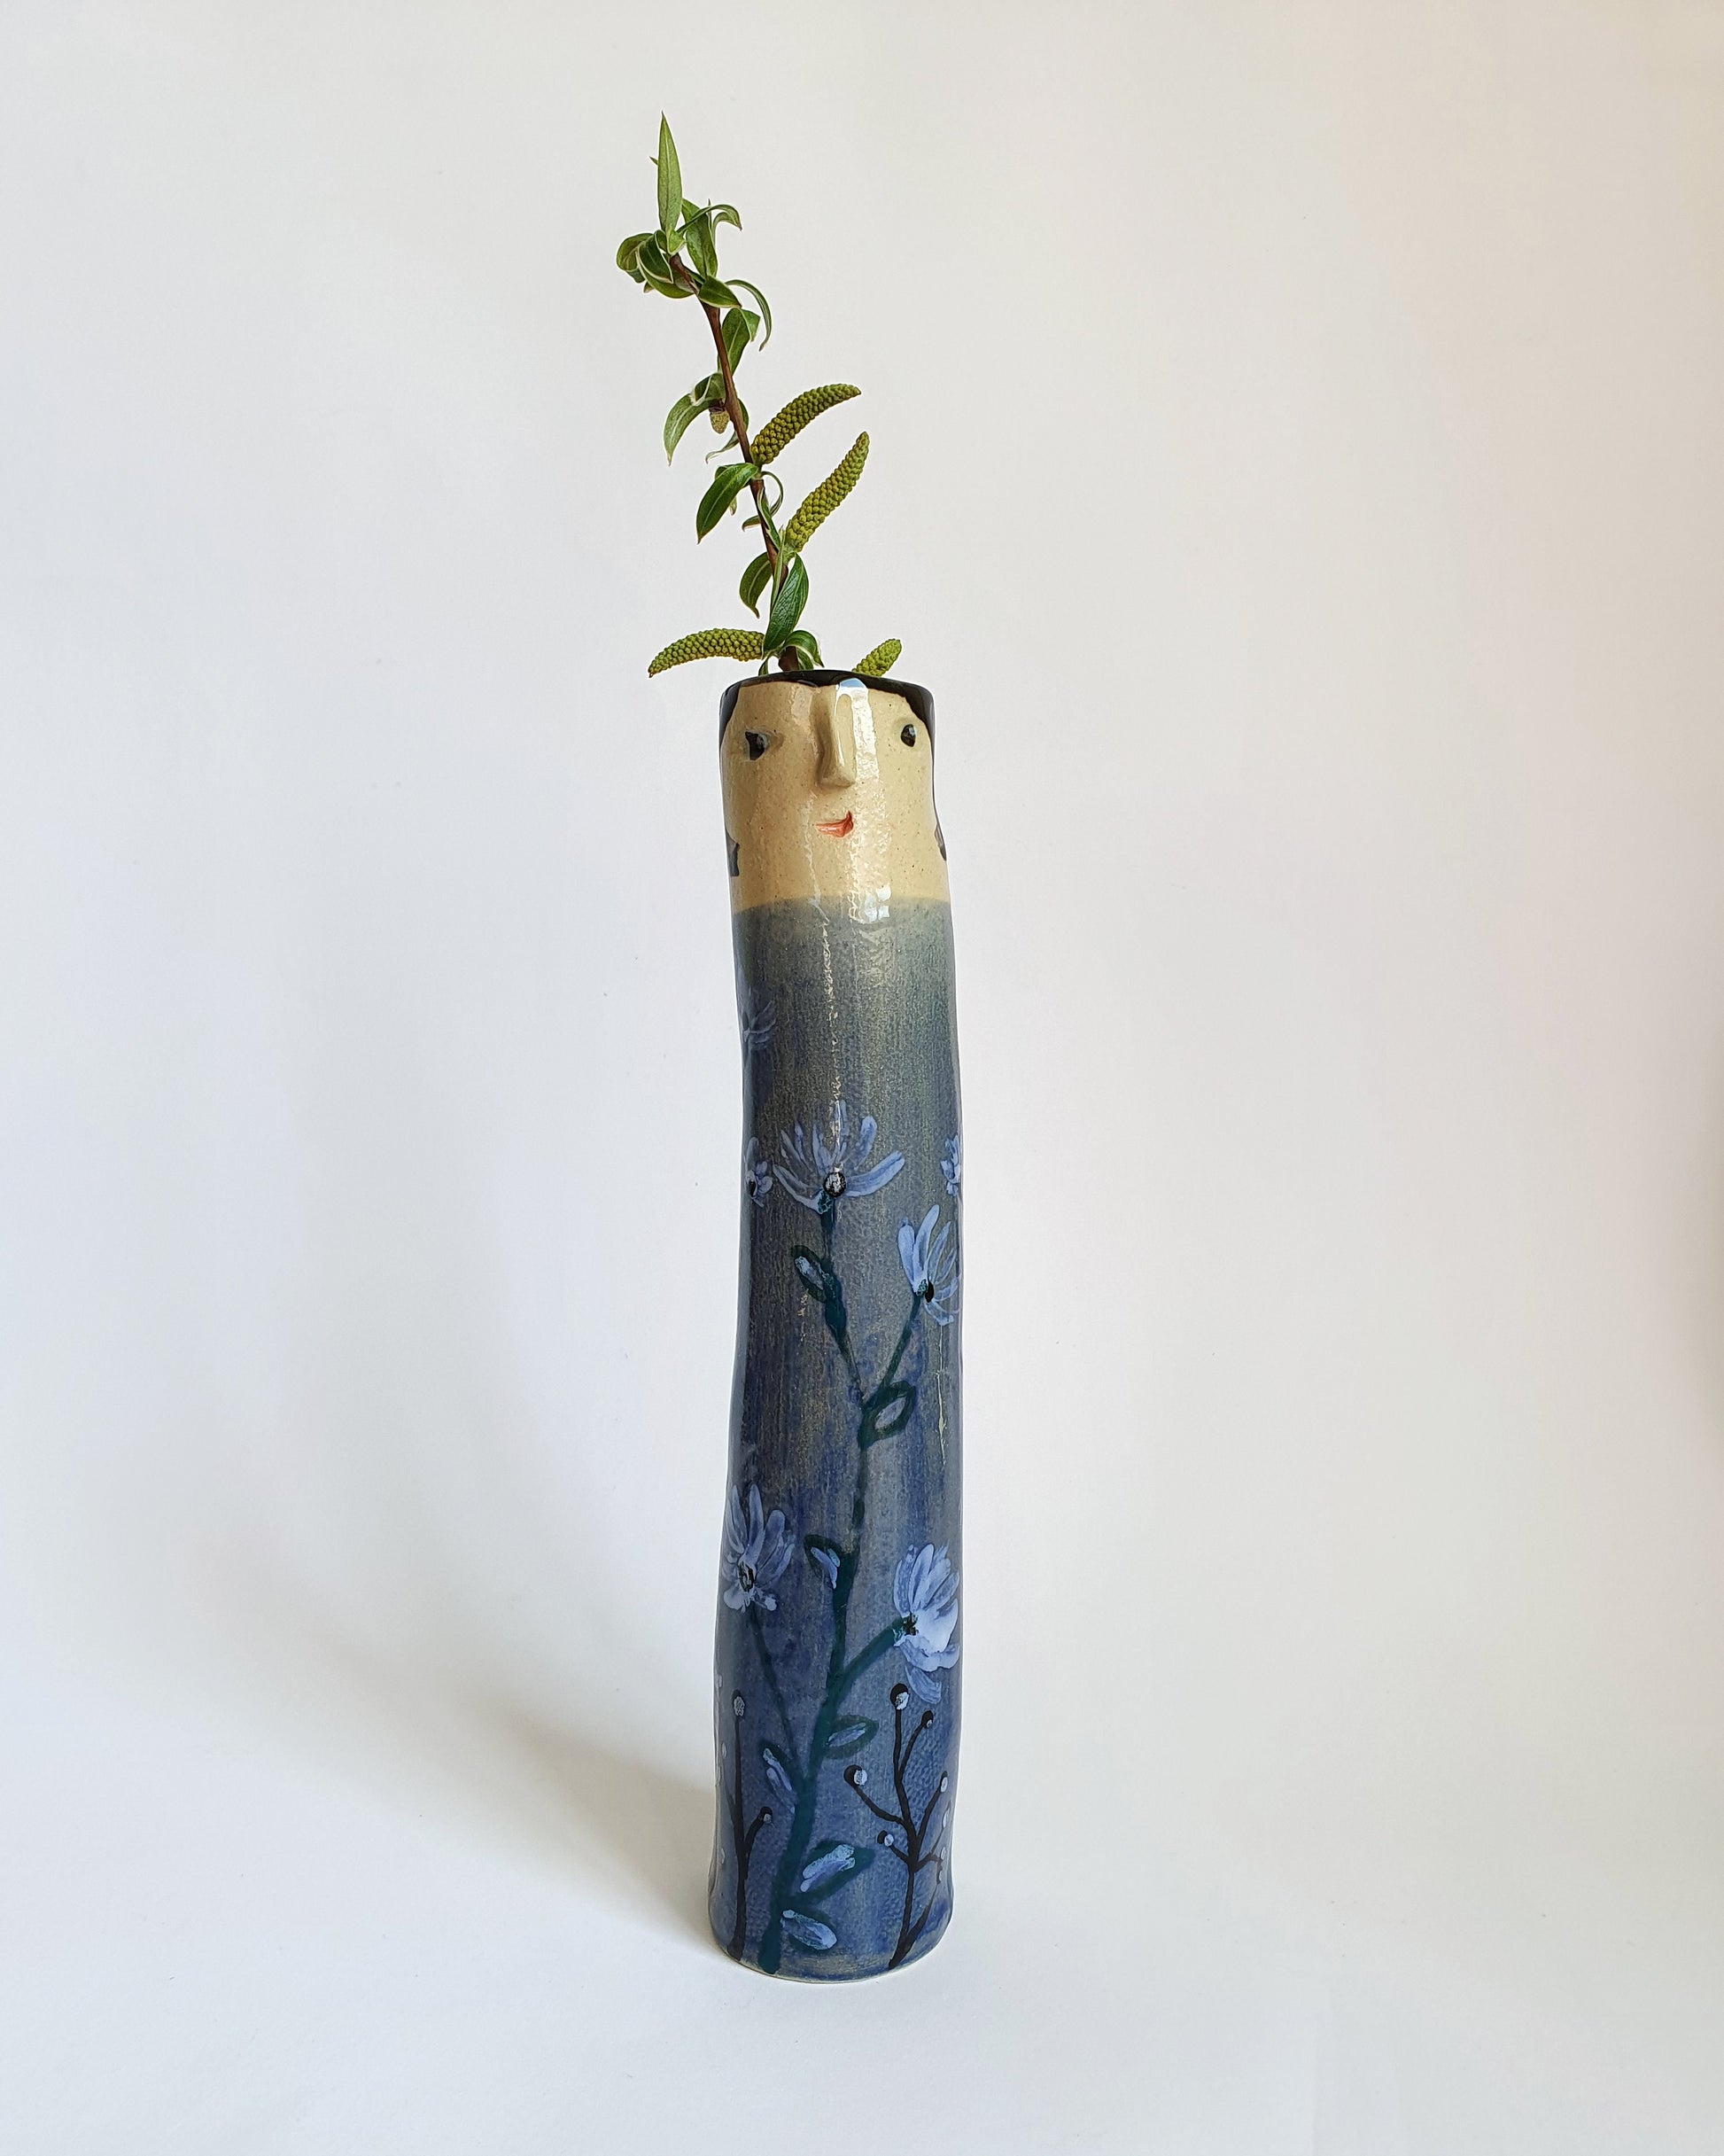 Spring Family Bud Vases - Ceramic Connoisseur